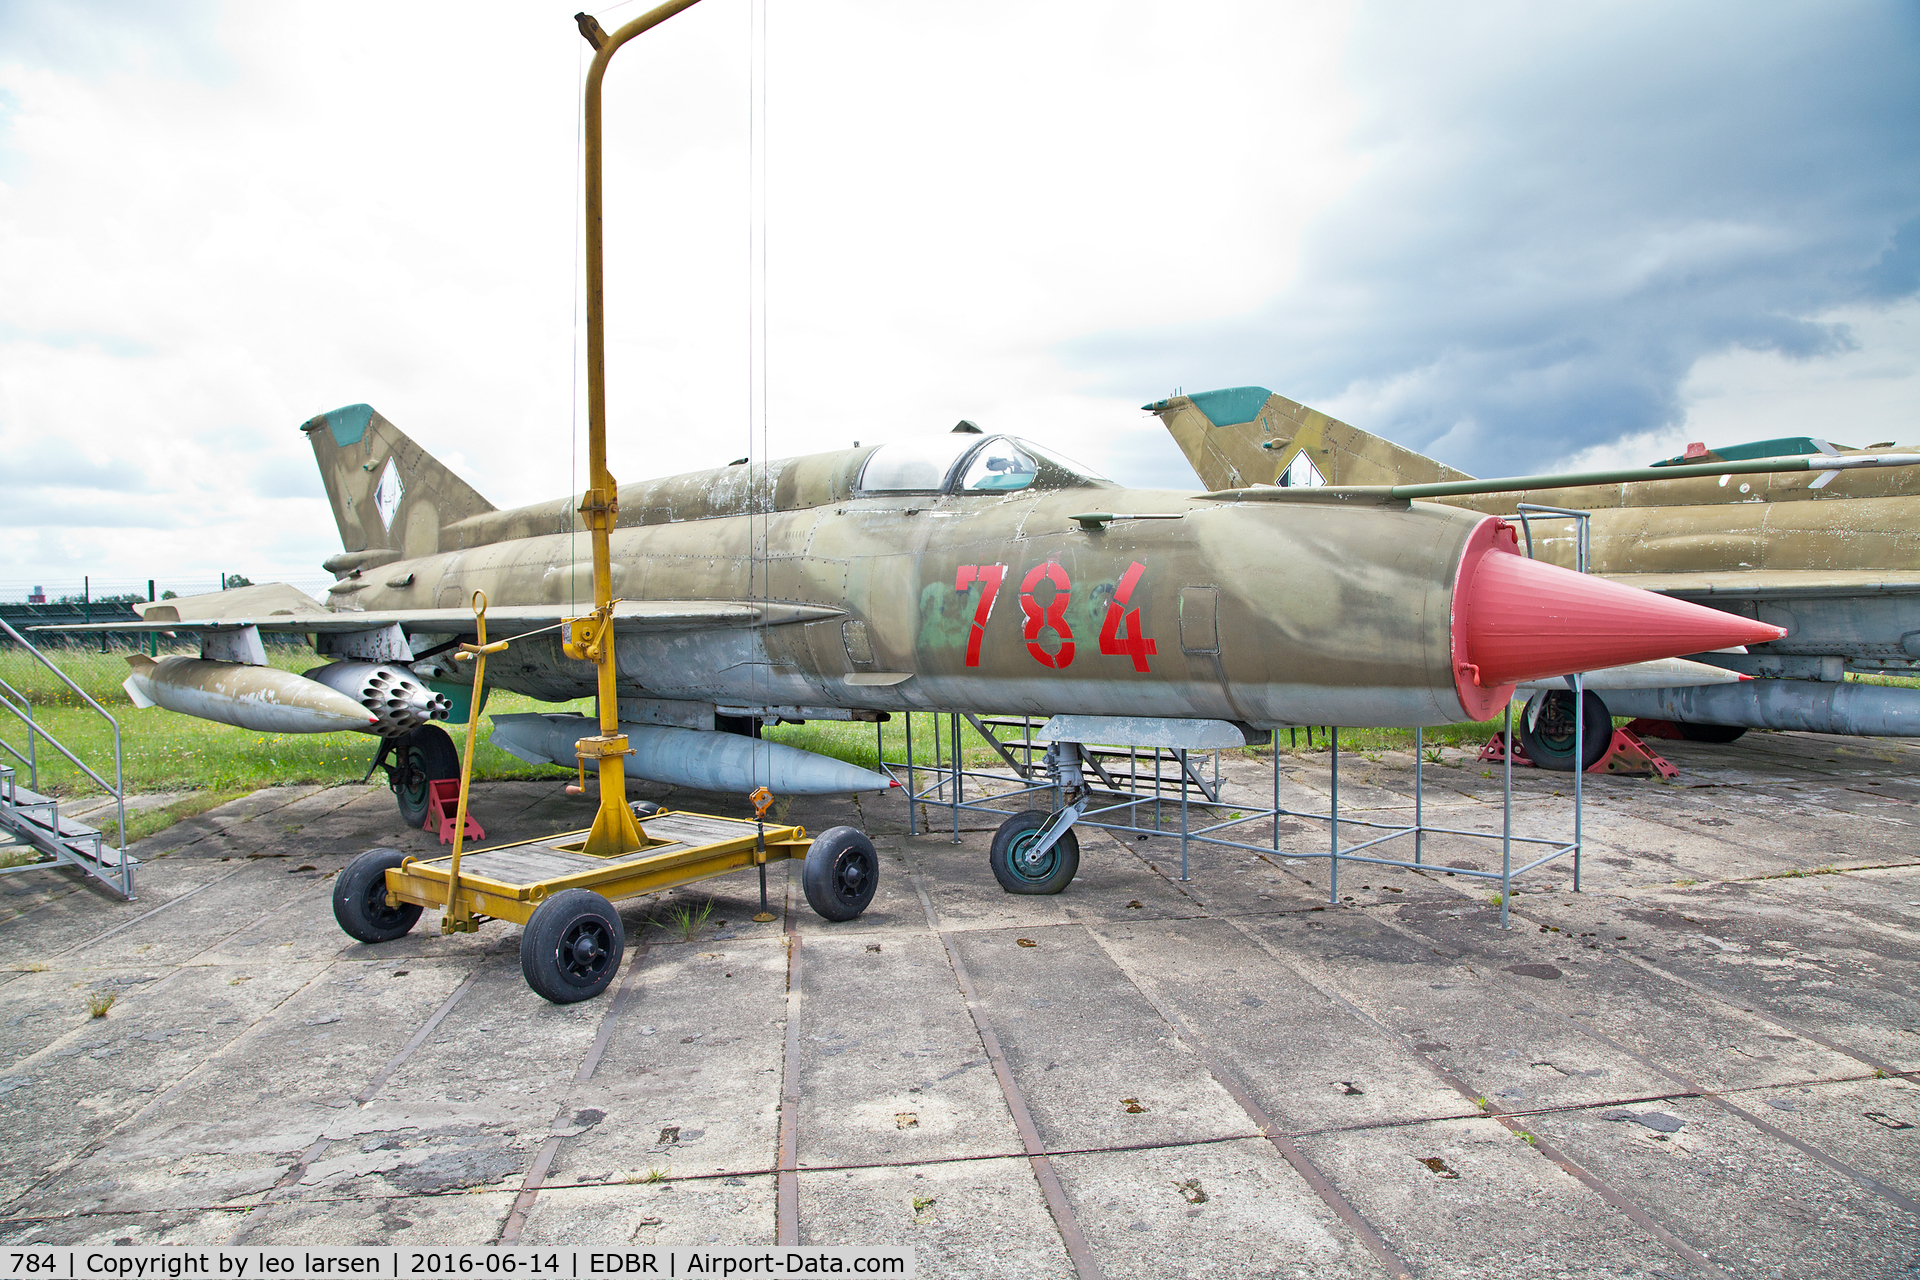 784, 1975 Mikoyan-Gurevich MiG-21MF C/N N96002170, Rothenburg museum 14.6.2016